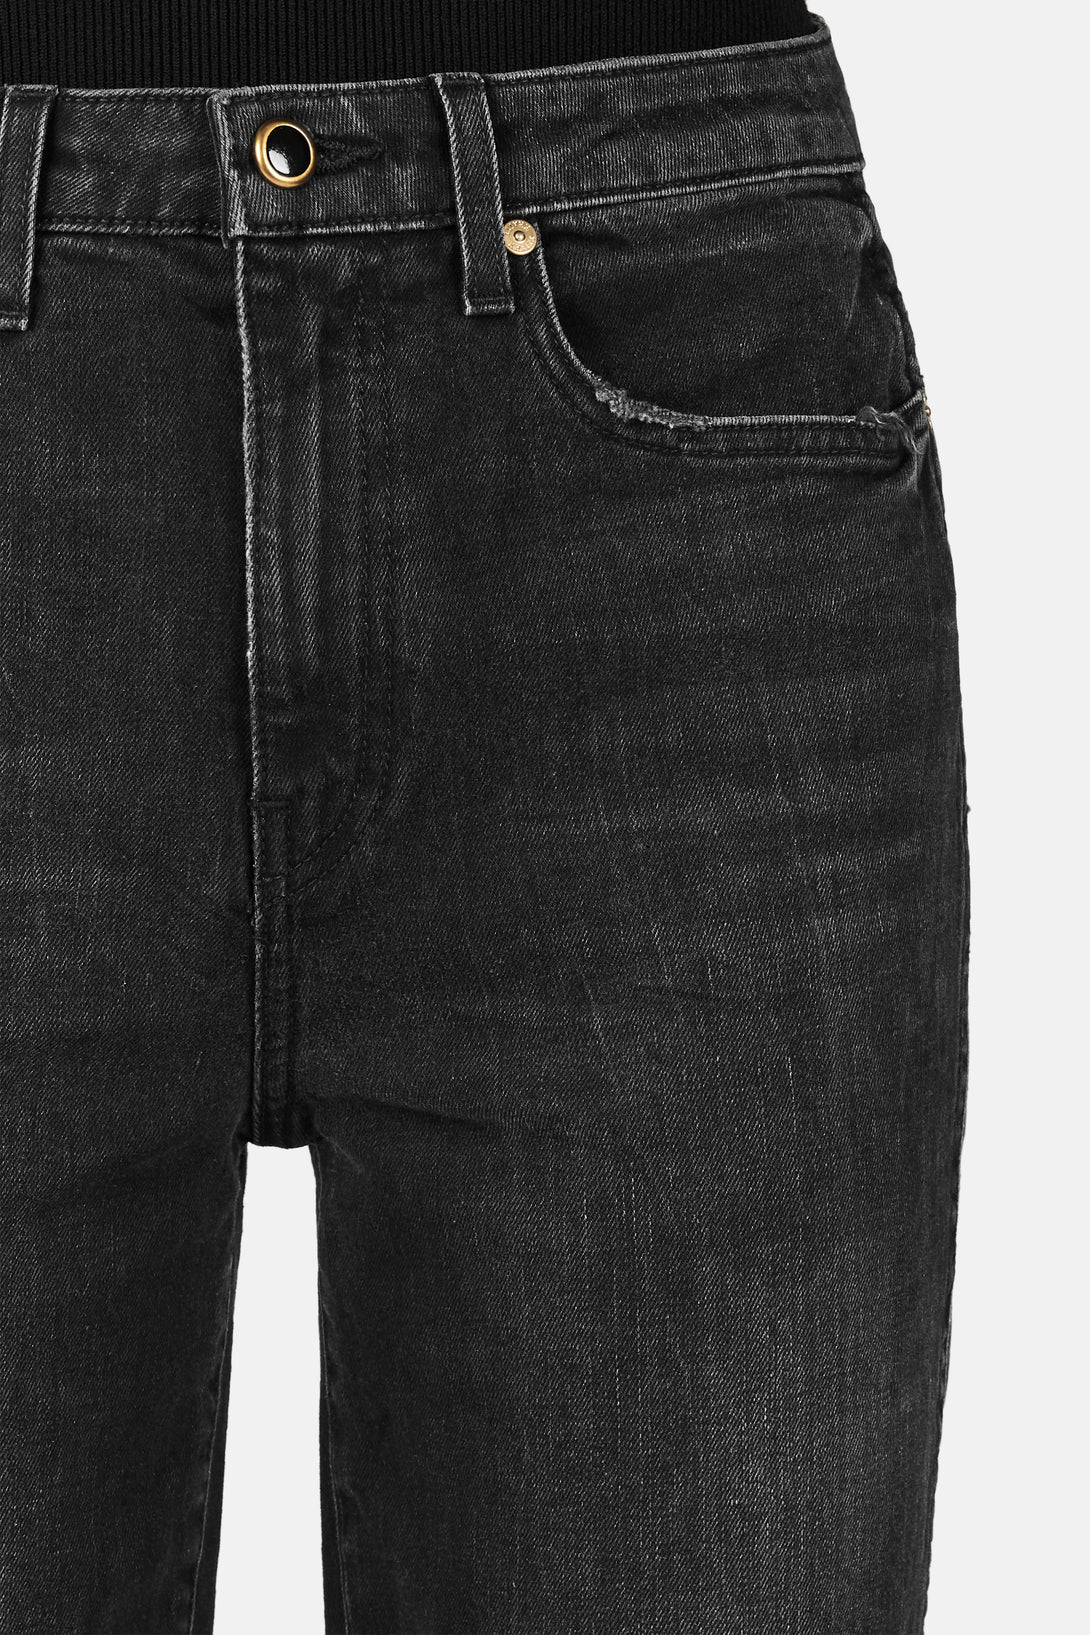 Benny Cropped Flare Jean - Vintage Black – The Line